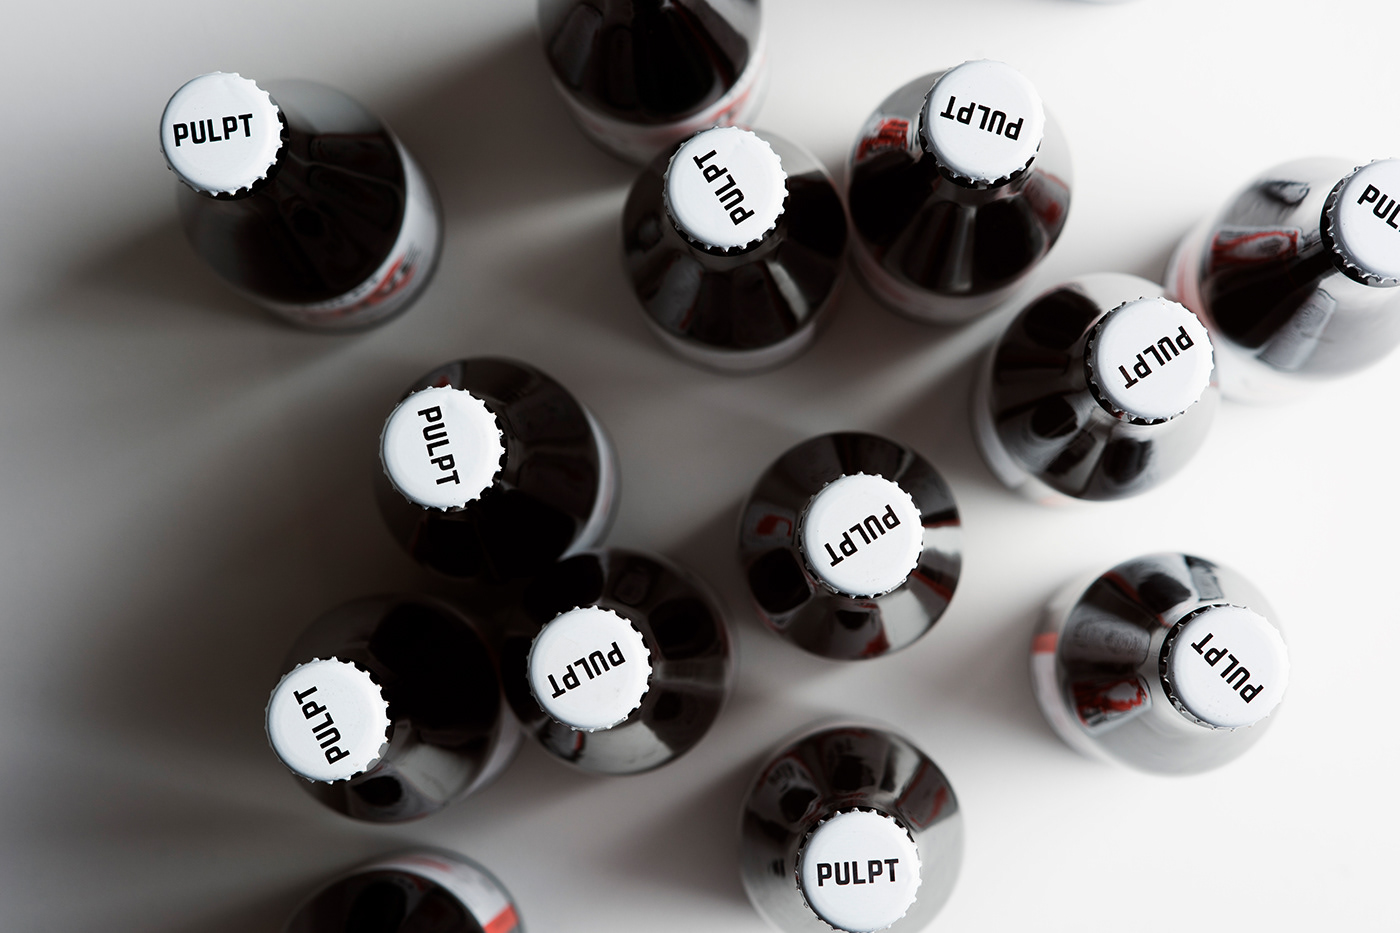 pulpt cider Packaging craft cider branding  Website bottles apples logo Label